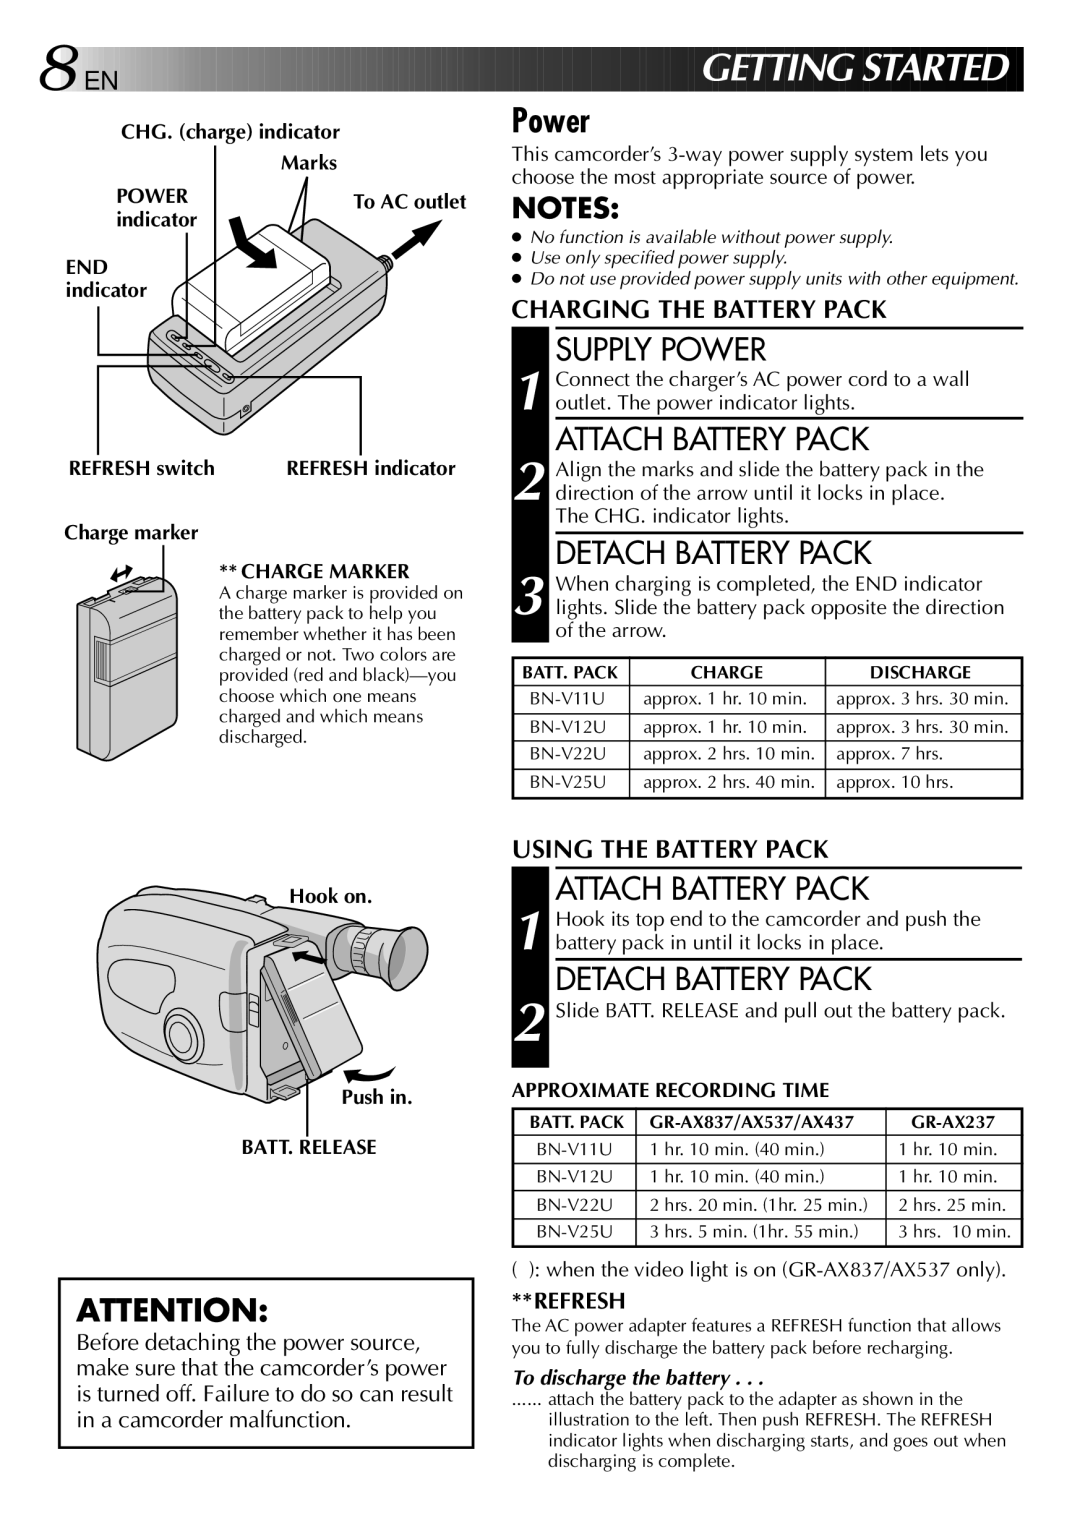 JVC GR-AX537, GR-AX837, GR-AX437, GR-AX237 manual Supply Power, Attach Battery Pack, Detach Battery Pack 